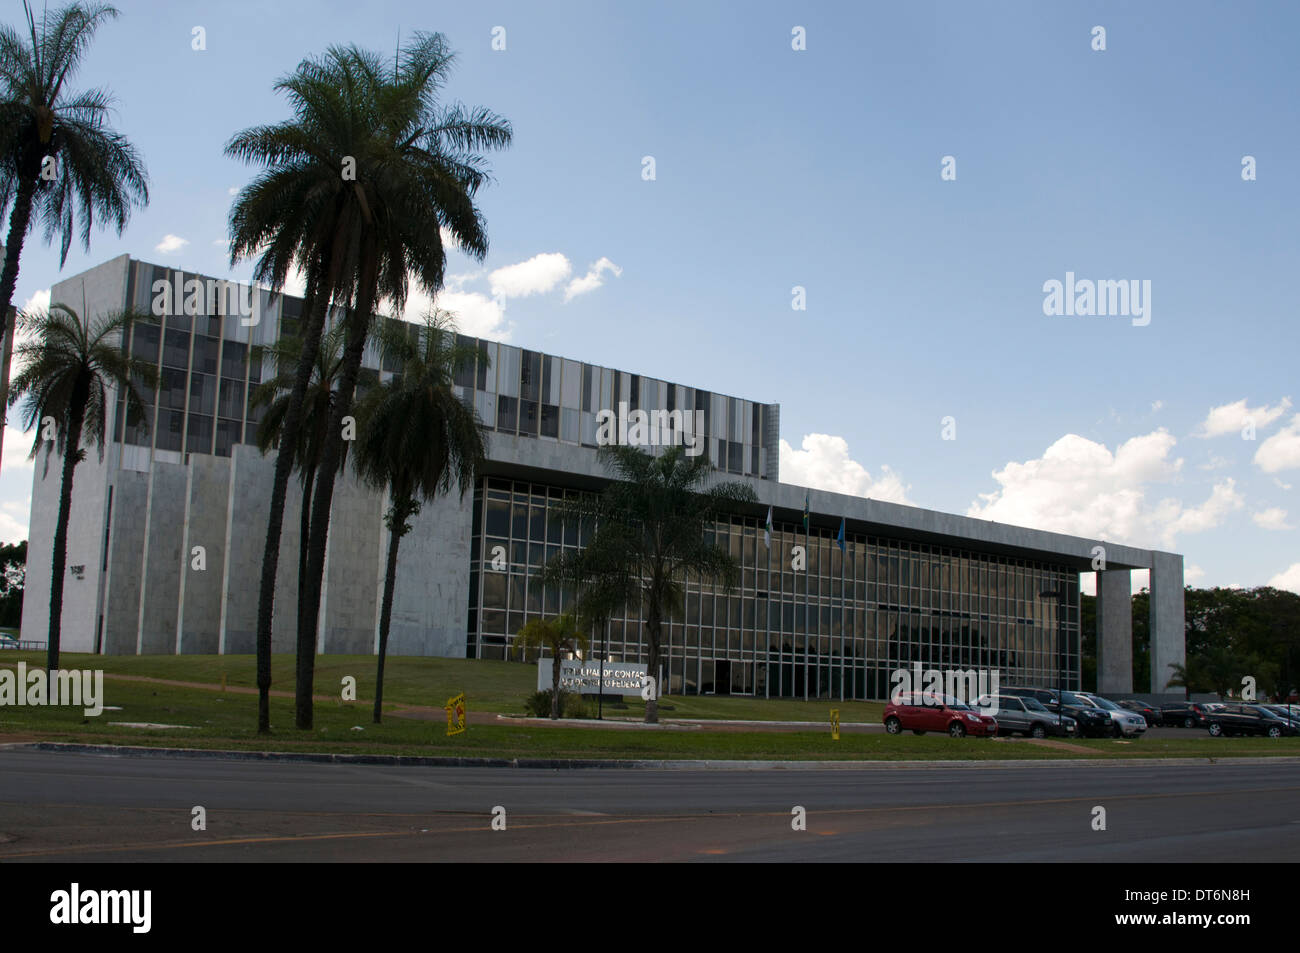 Il Palacio do Buriti (Buriti Palace) è il governo del Distretto Federale - stato brasiliano a Brasilia, Brasile Foto Stock